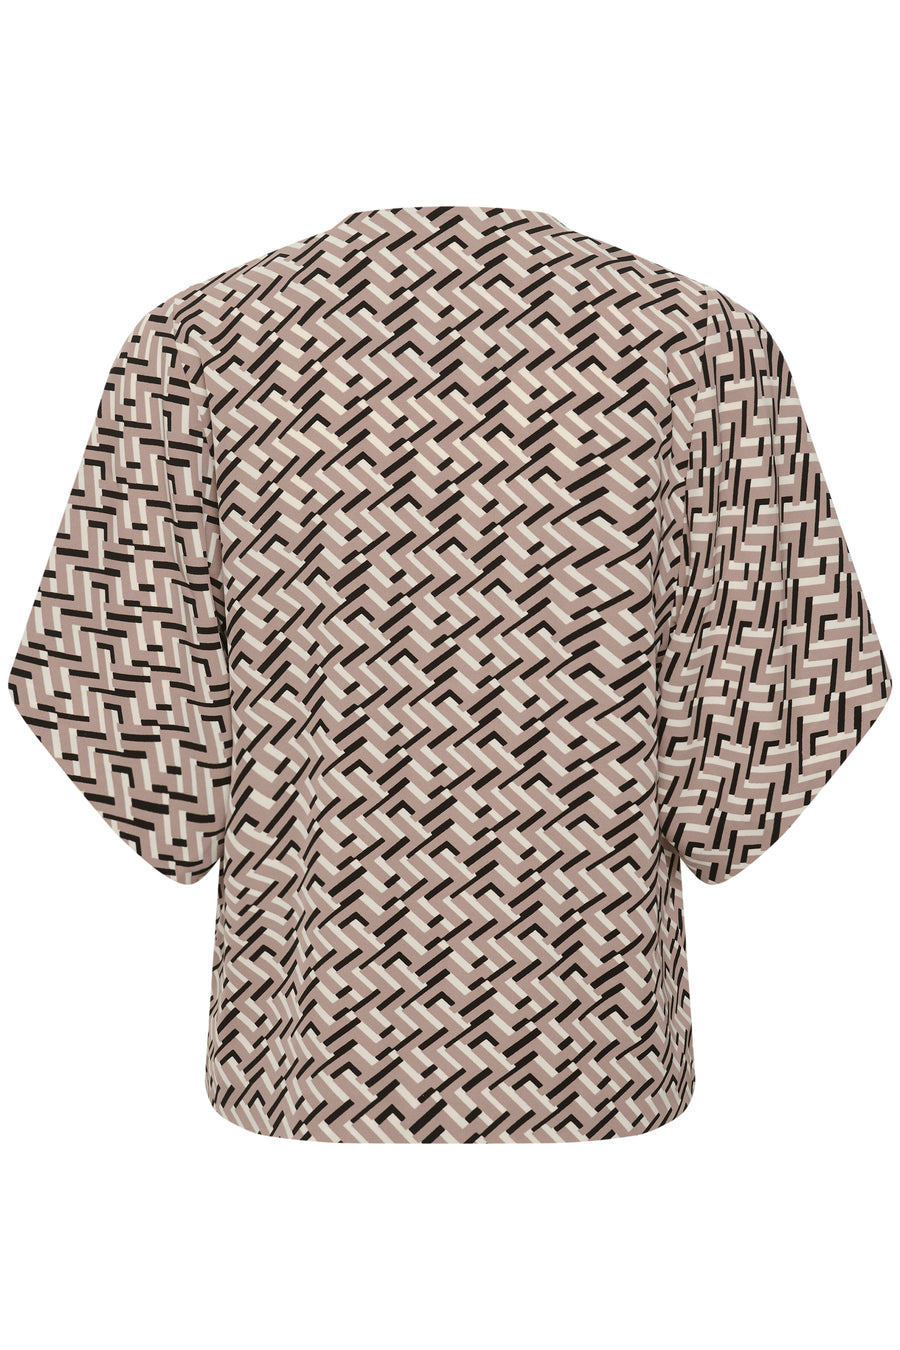 Qailey blouse motif